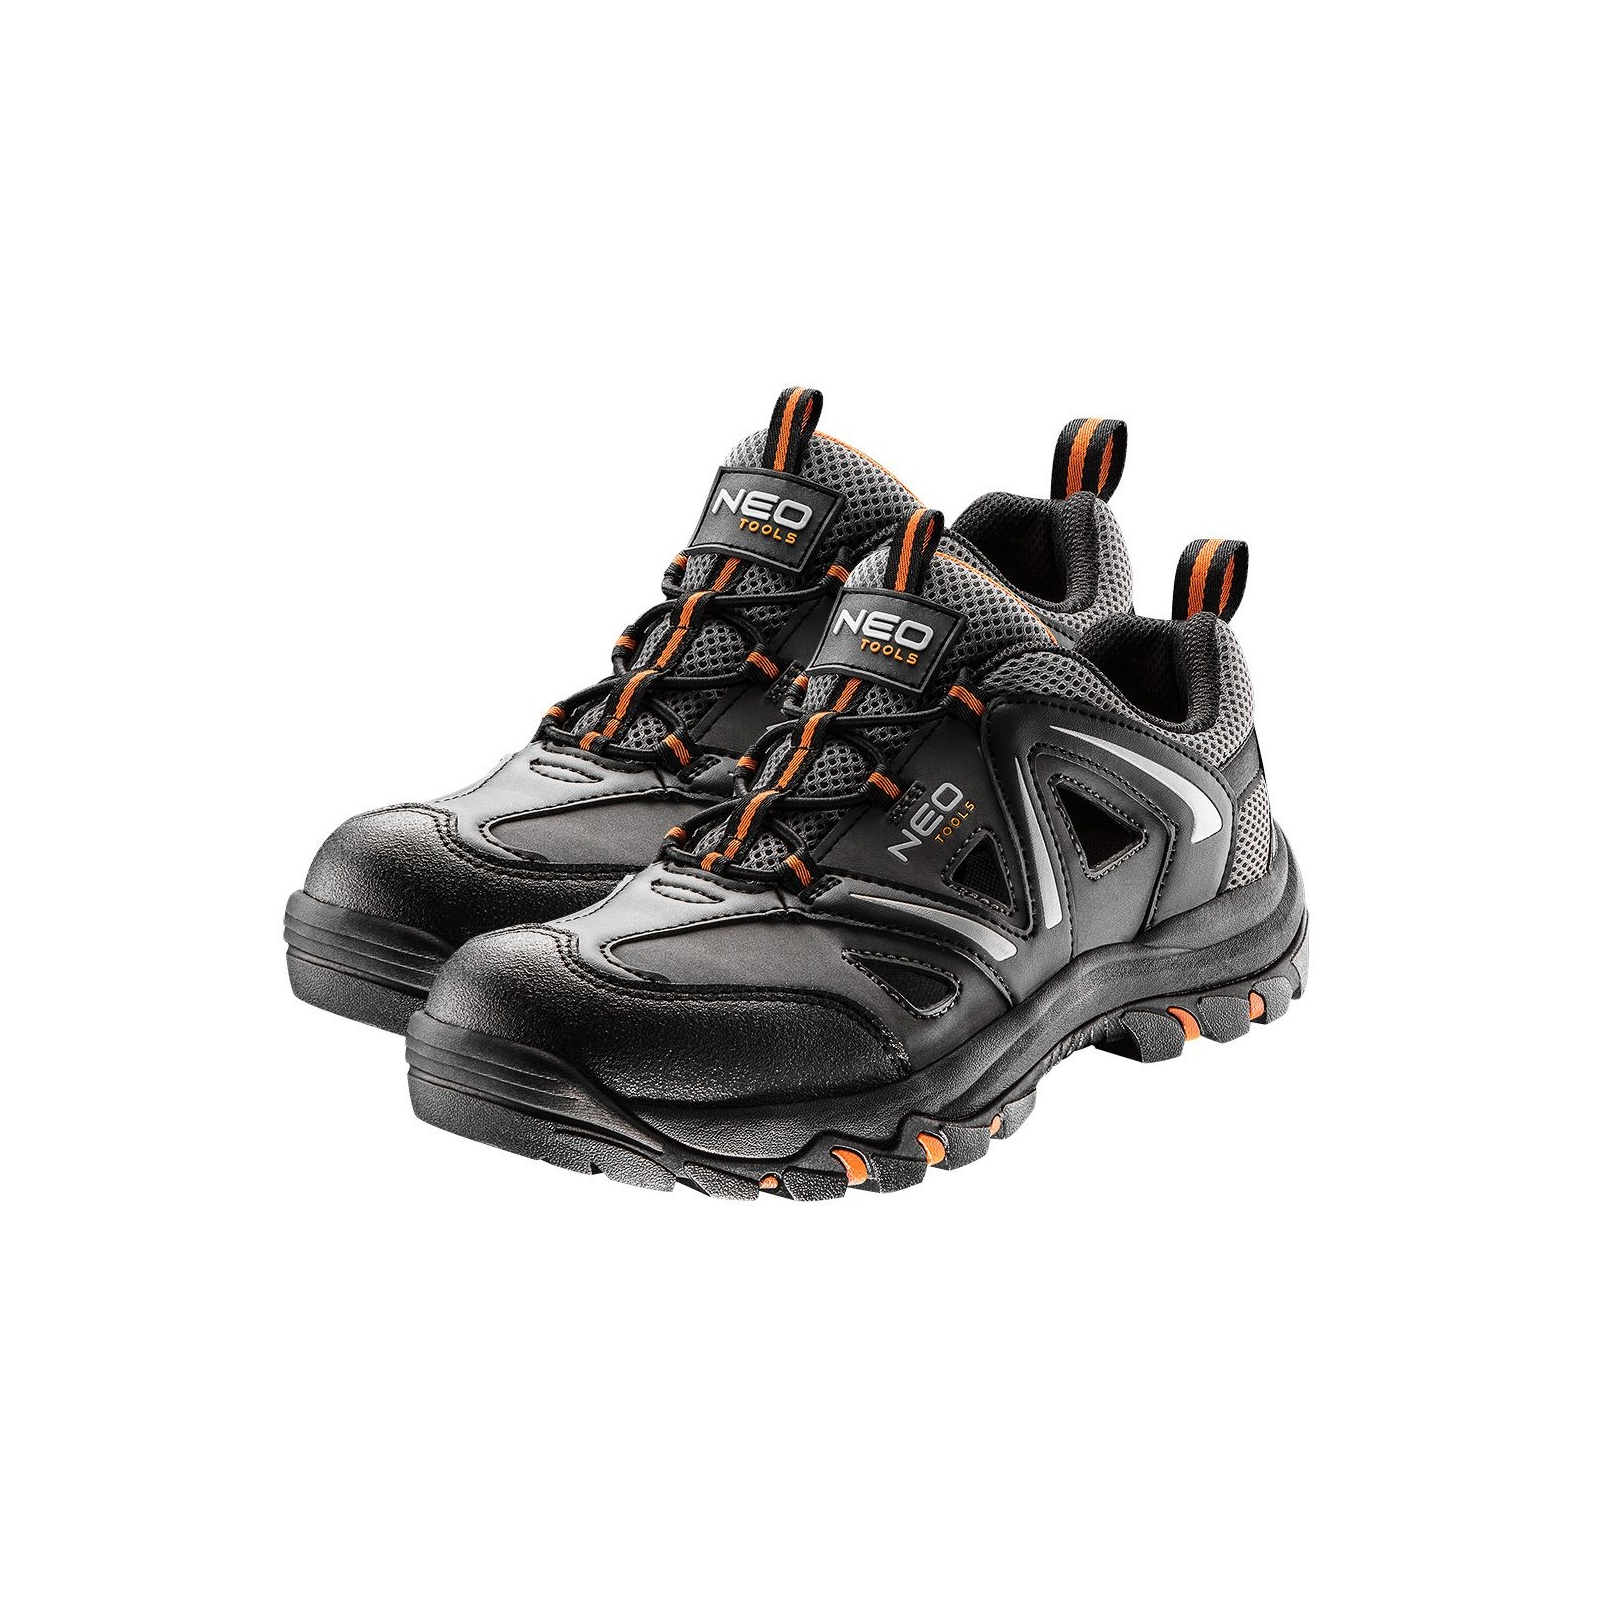 Ботинки рабочие Neo Tools кроссовки дышащие, подошва EVA, класс защиты OB, SRA, р.46 (82-727)